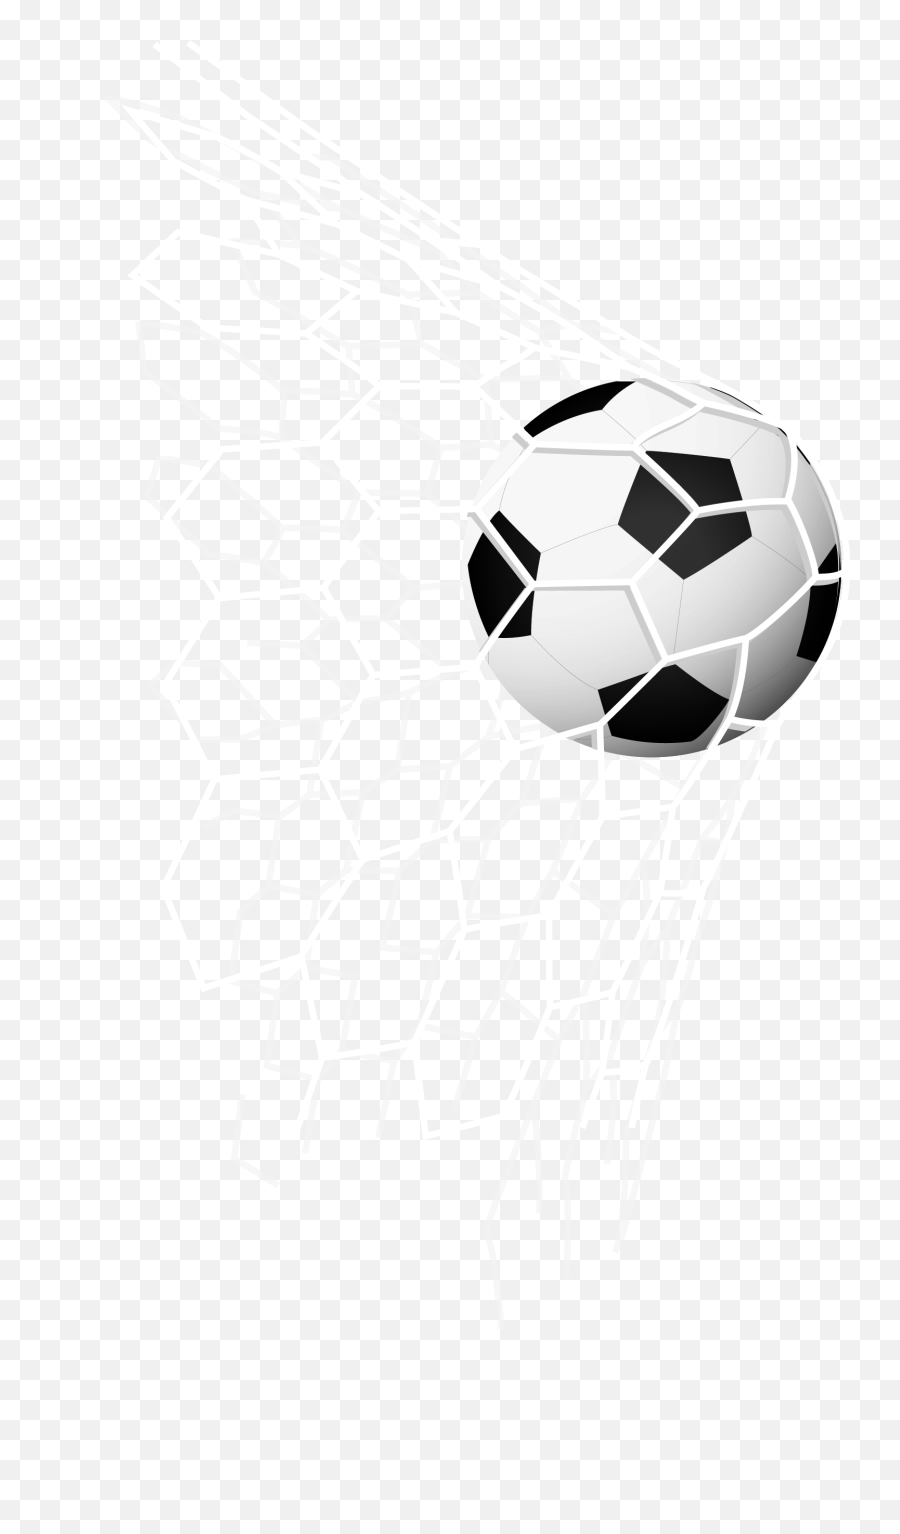 Soccer Goal Png - Soccer Goal Wallpapern54949q Soccer Soccer Ball And Net,Goal Png